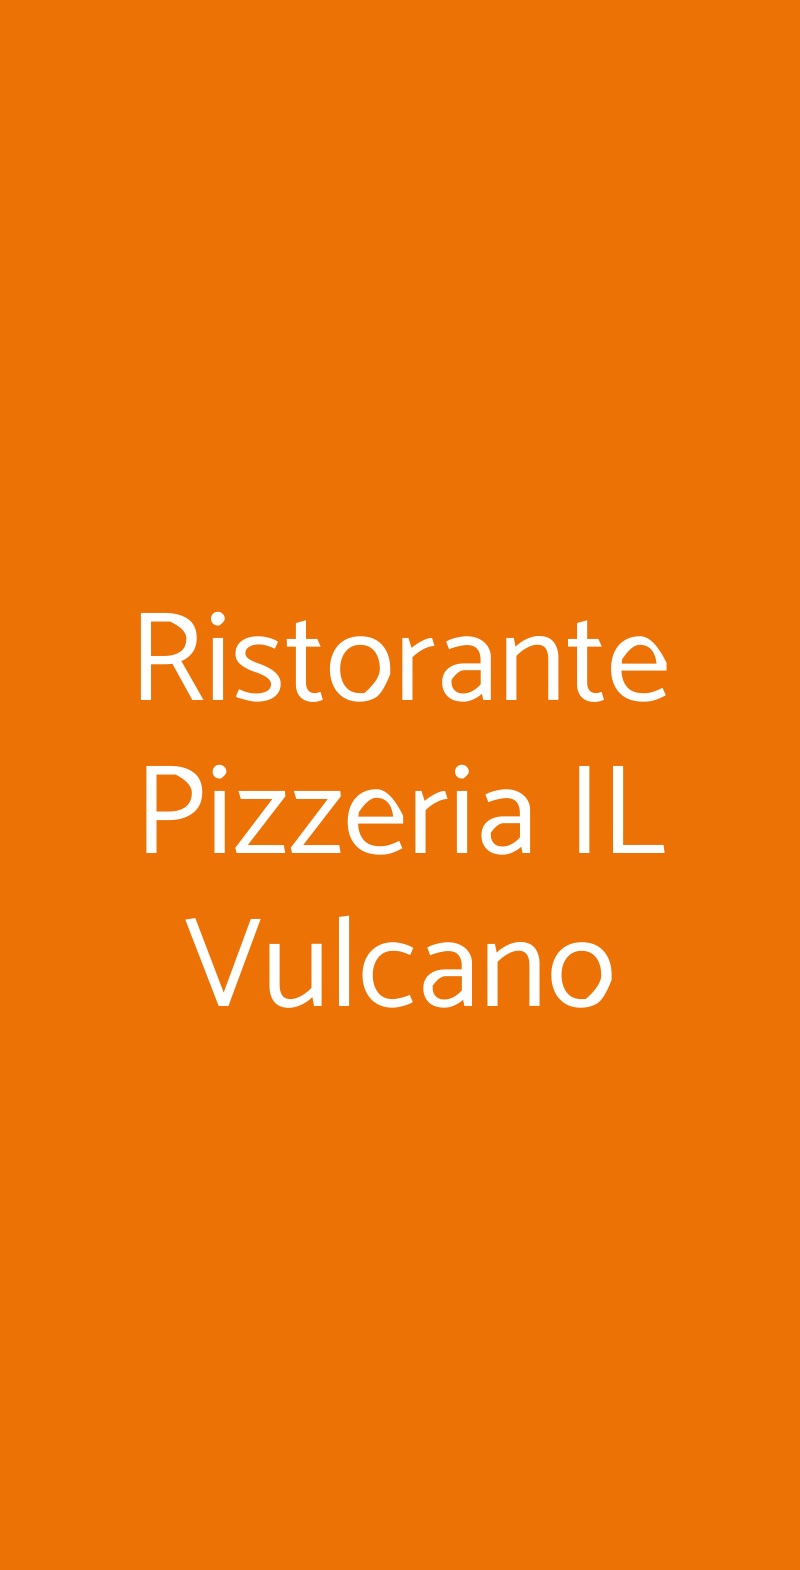 Ristorante Pizzeria IL Vulcano Roma menù 1 pagina